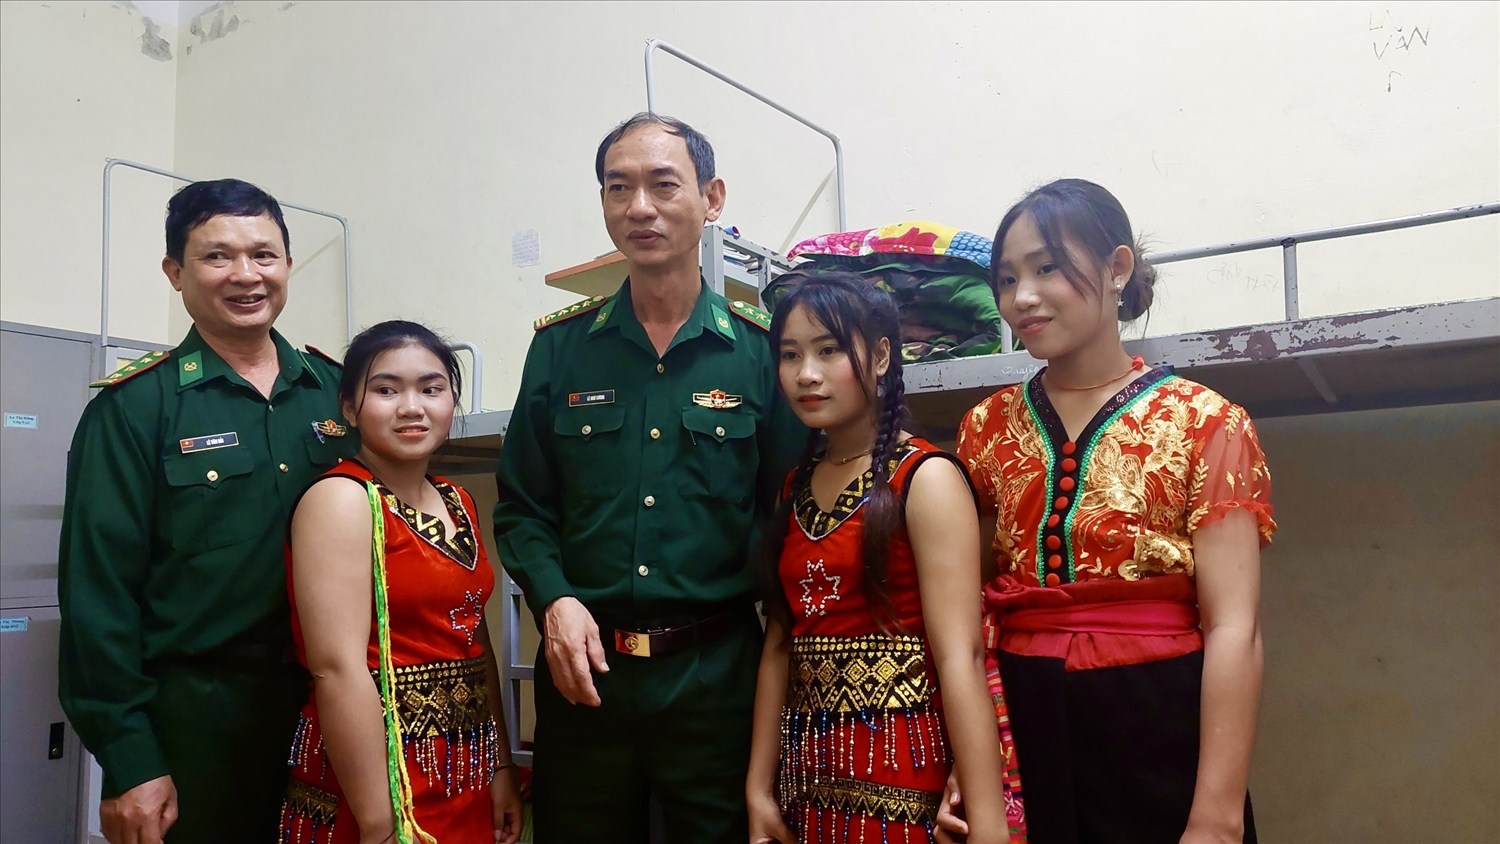 Đại tá Lê Như Cương, Bí thư Đảng uỷ, Chính uỷ BĐBP Nghệ An thăm, động viên các học sinh dân tộc Đan Lai sinh hoạt tại ký túc xá 